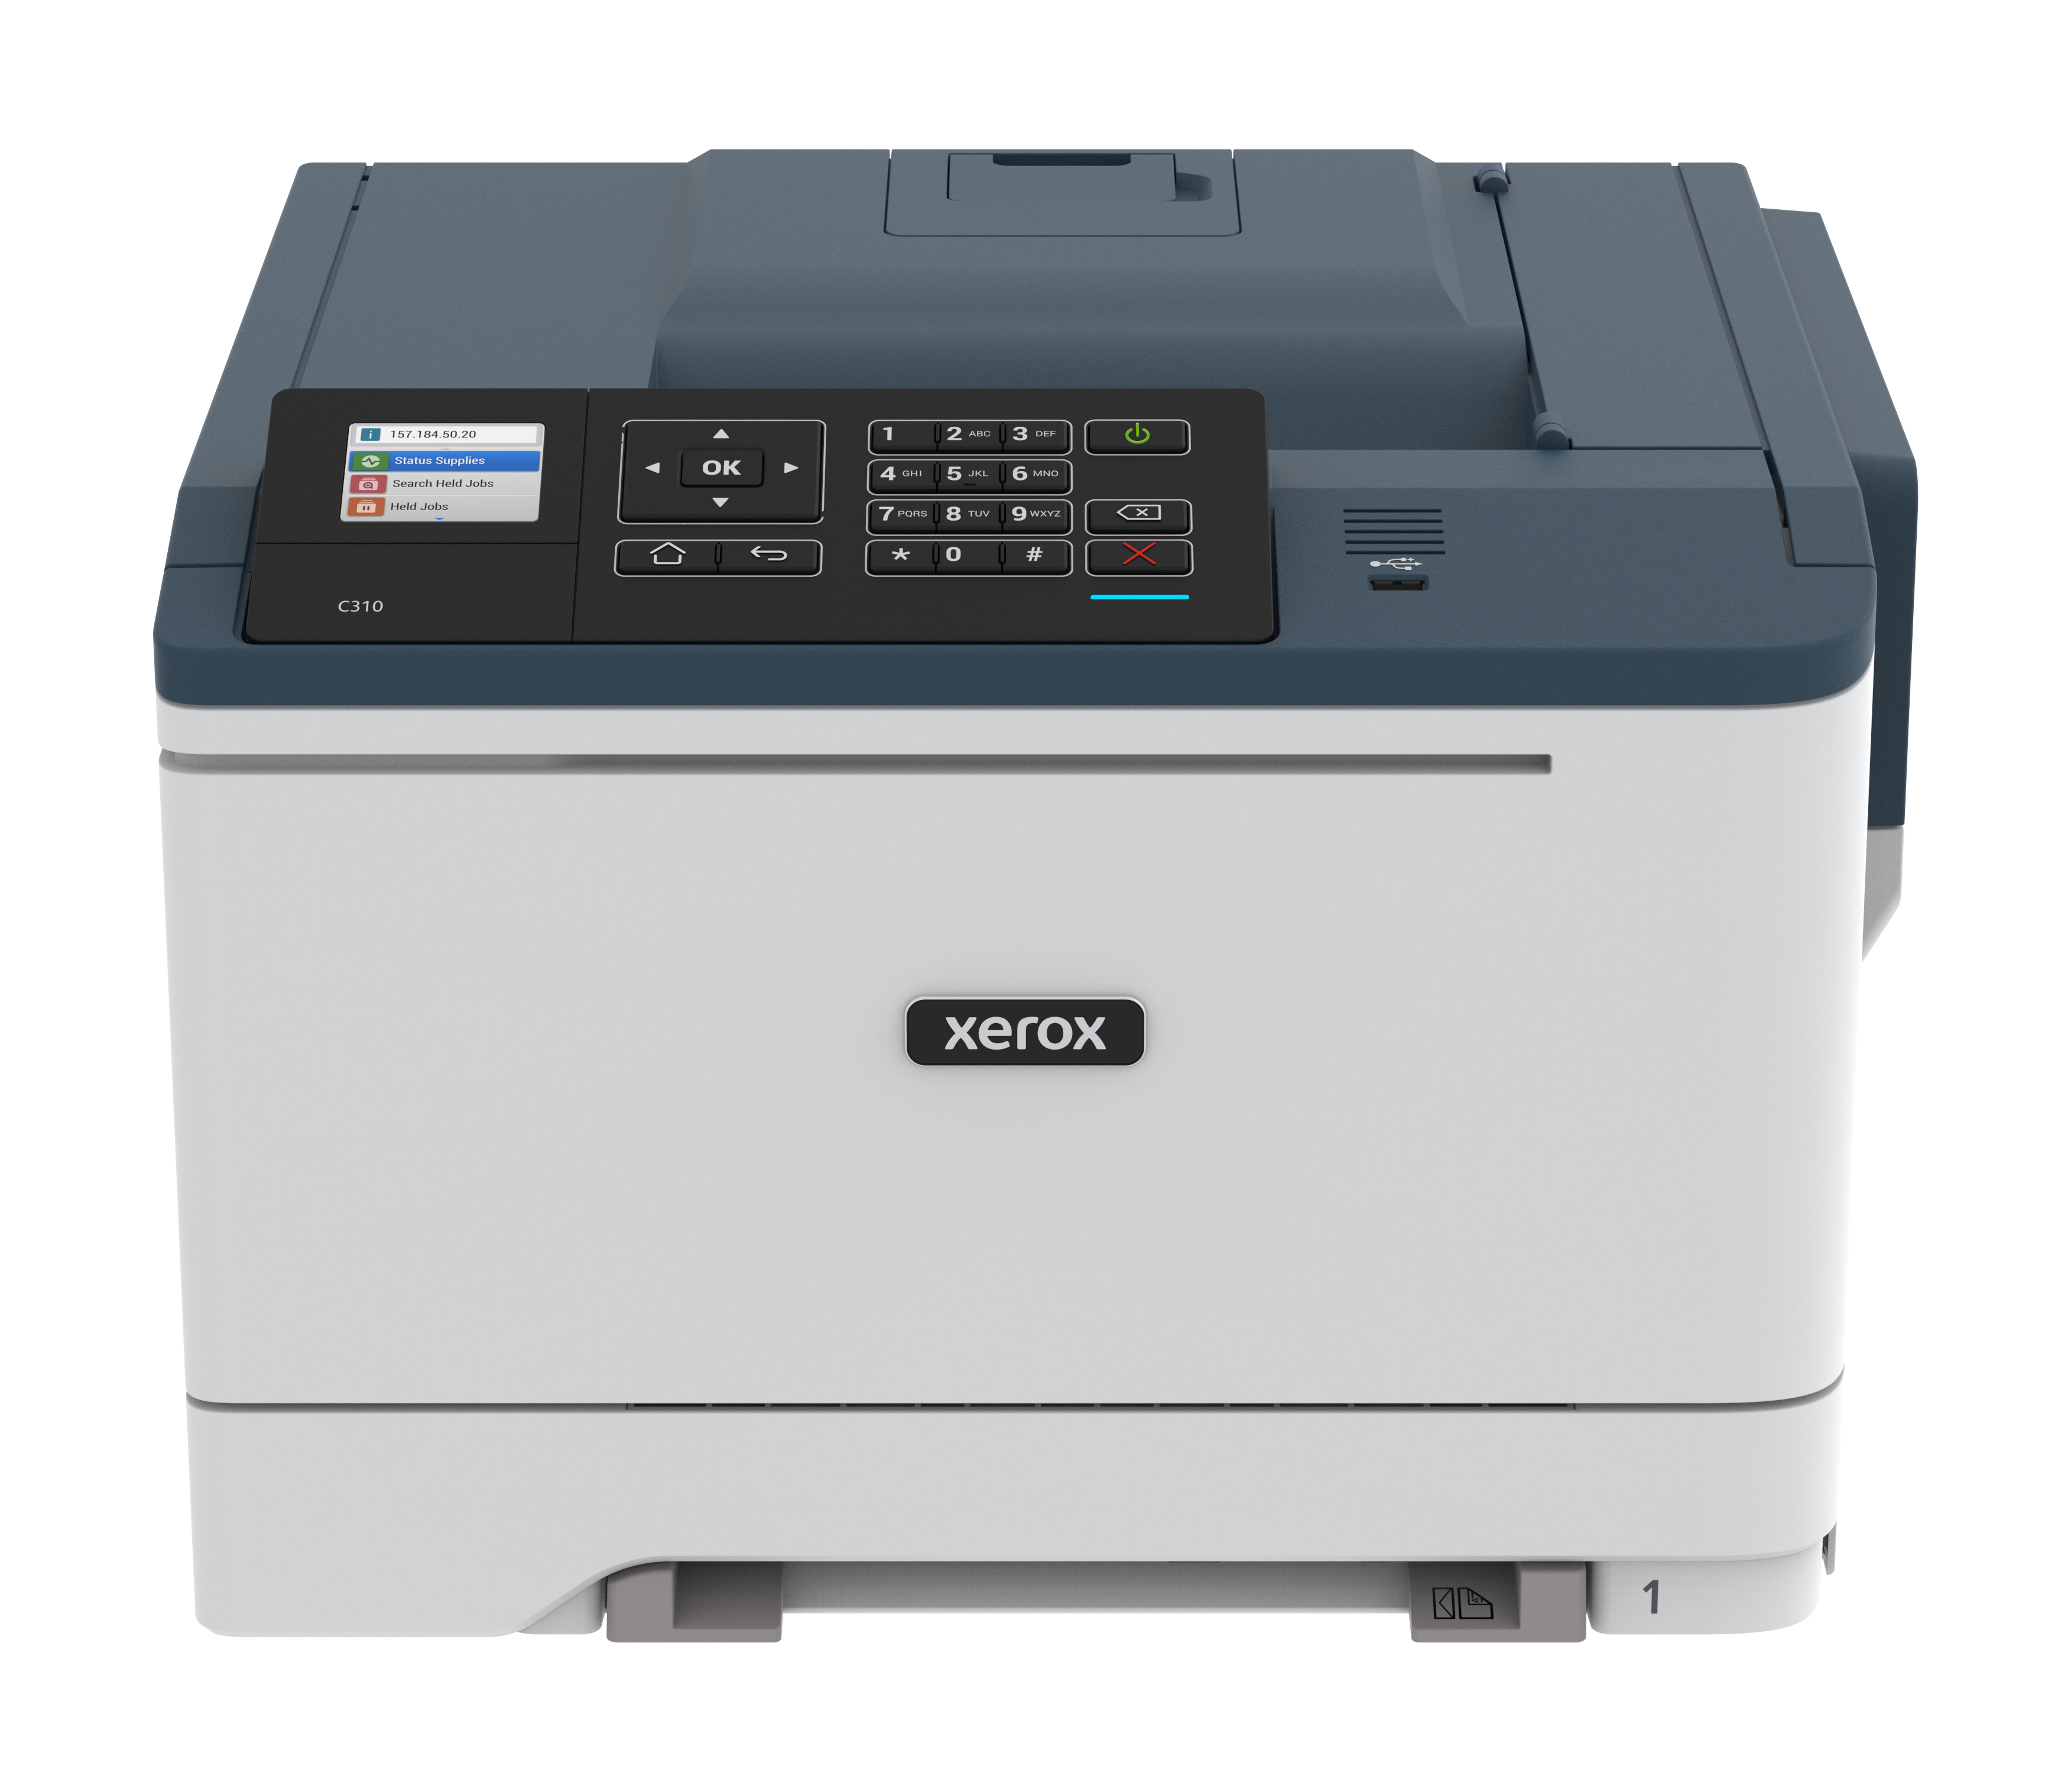 Xerox Xerox C310 A4 33 ppm draadloze dubbelzijdige printer PS3 PCL5e6/6 2 laden totaal 251 vel